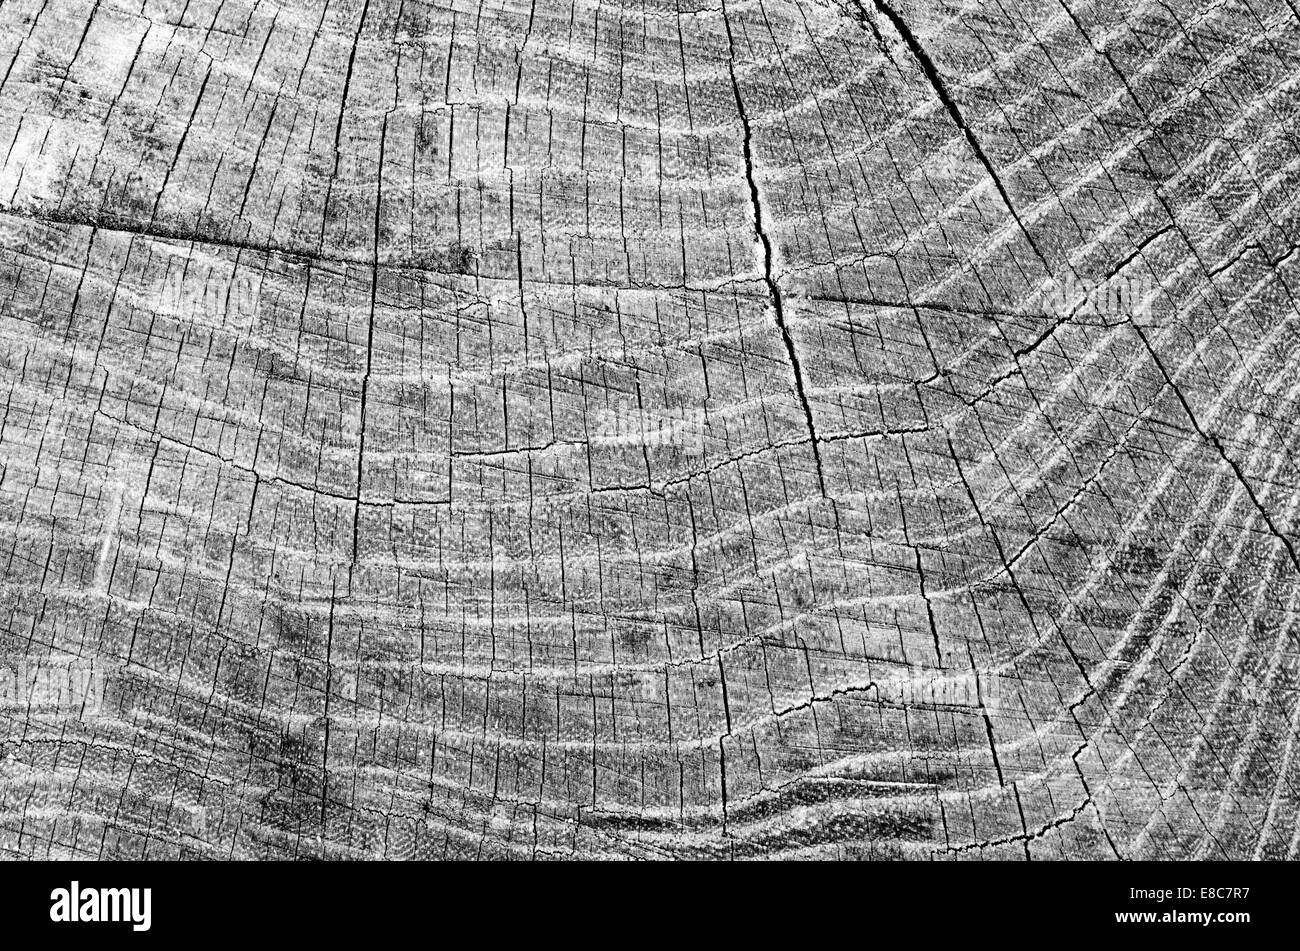 La texture en bois fond d'arbre Banque D'Images